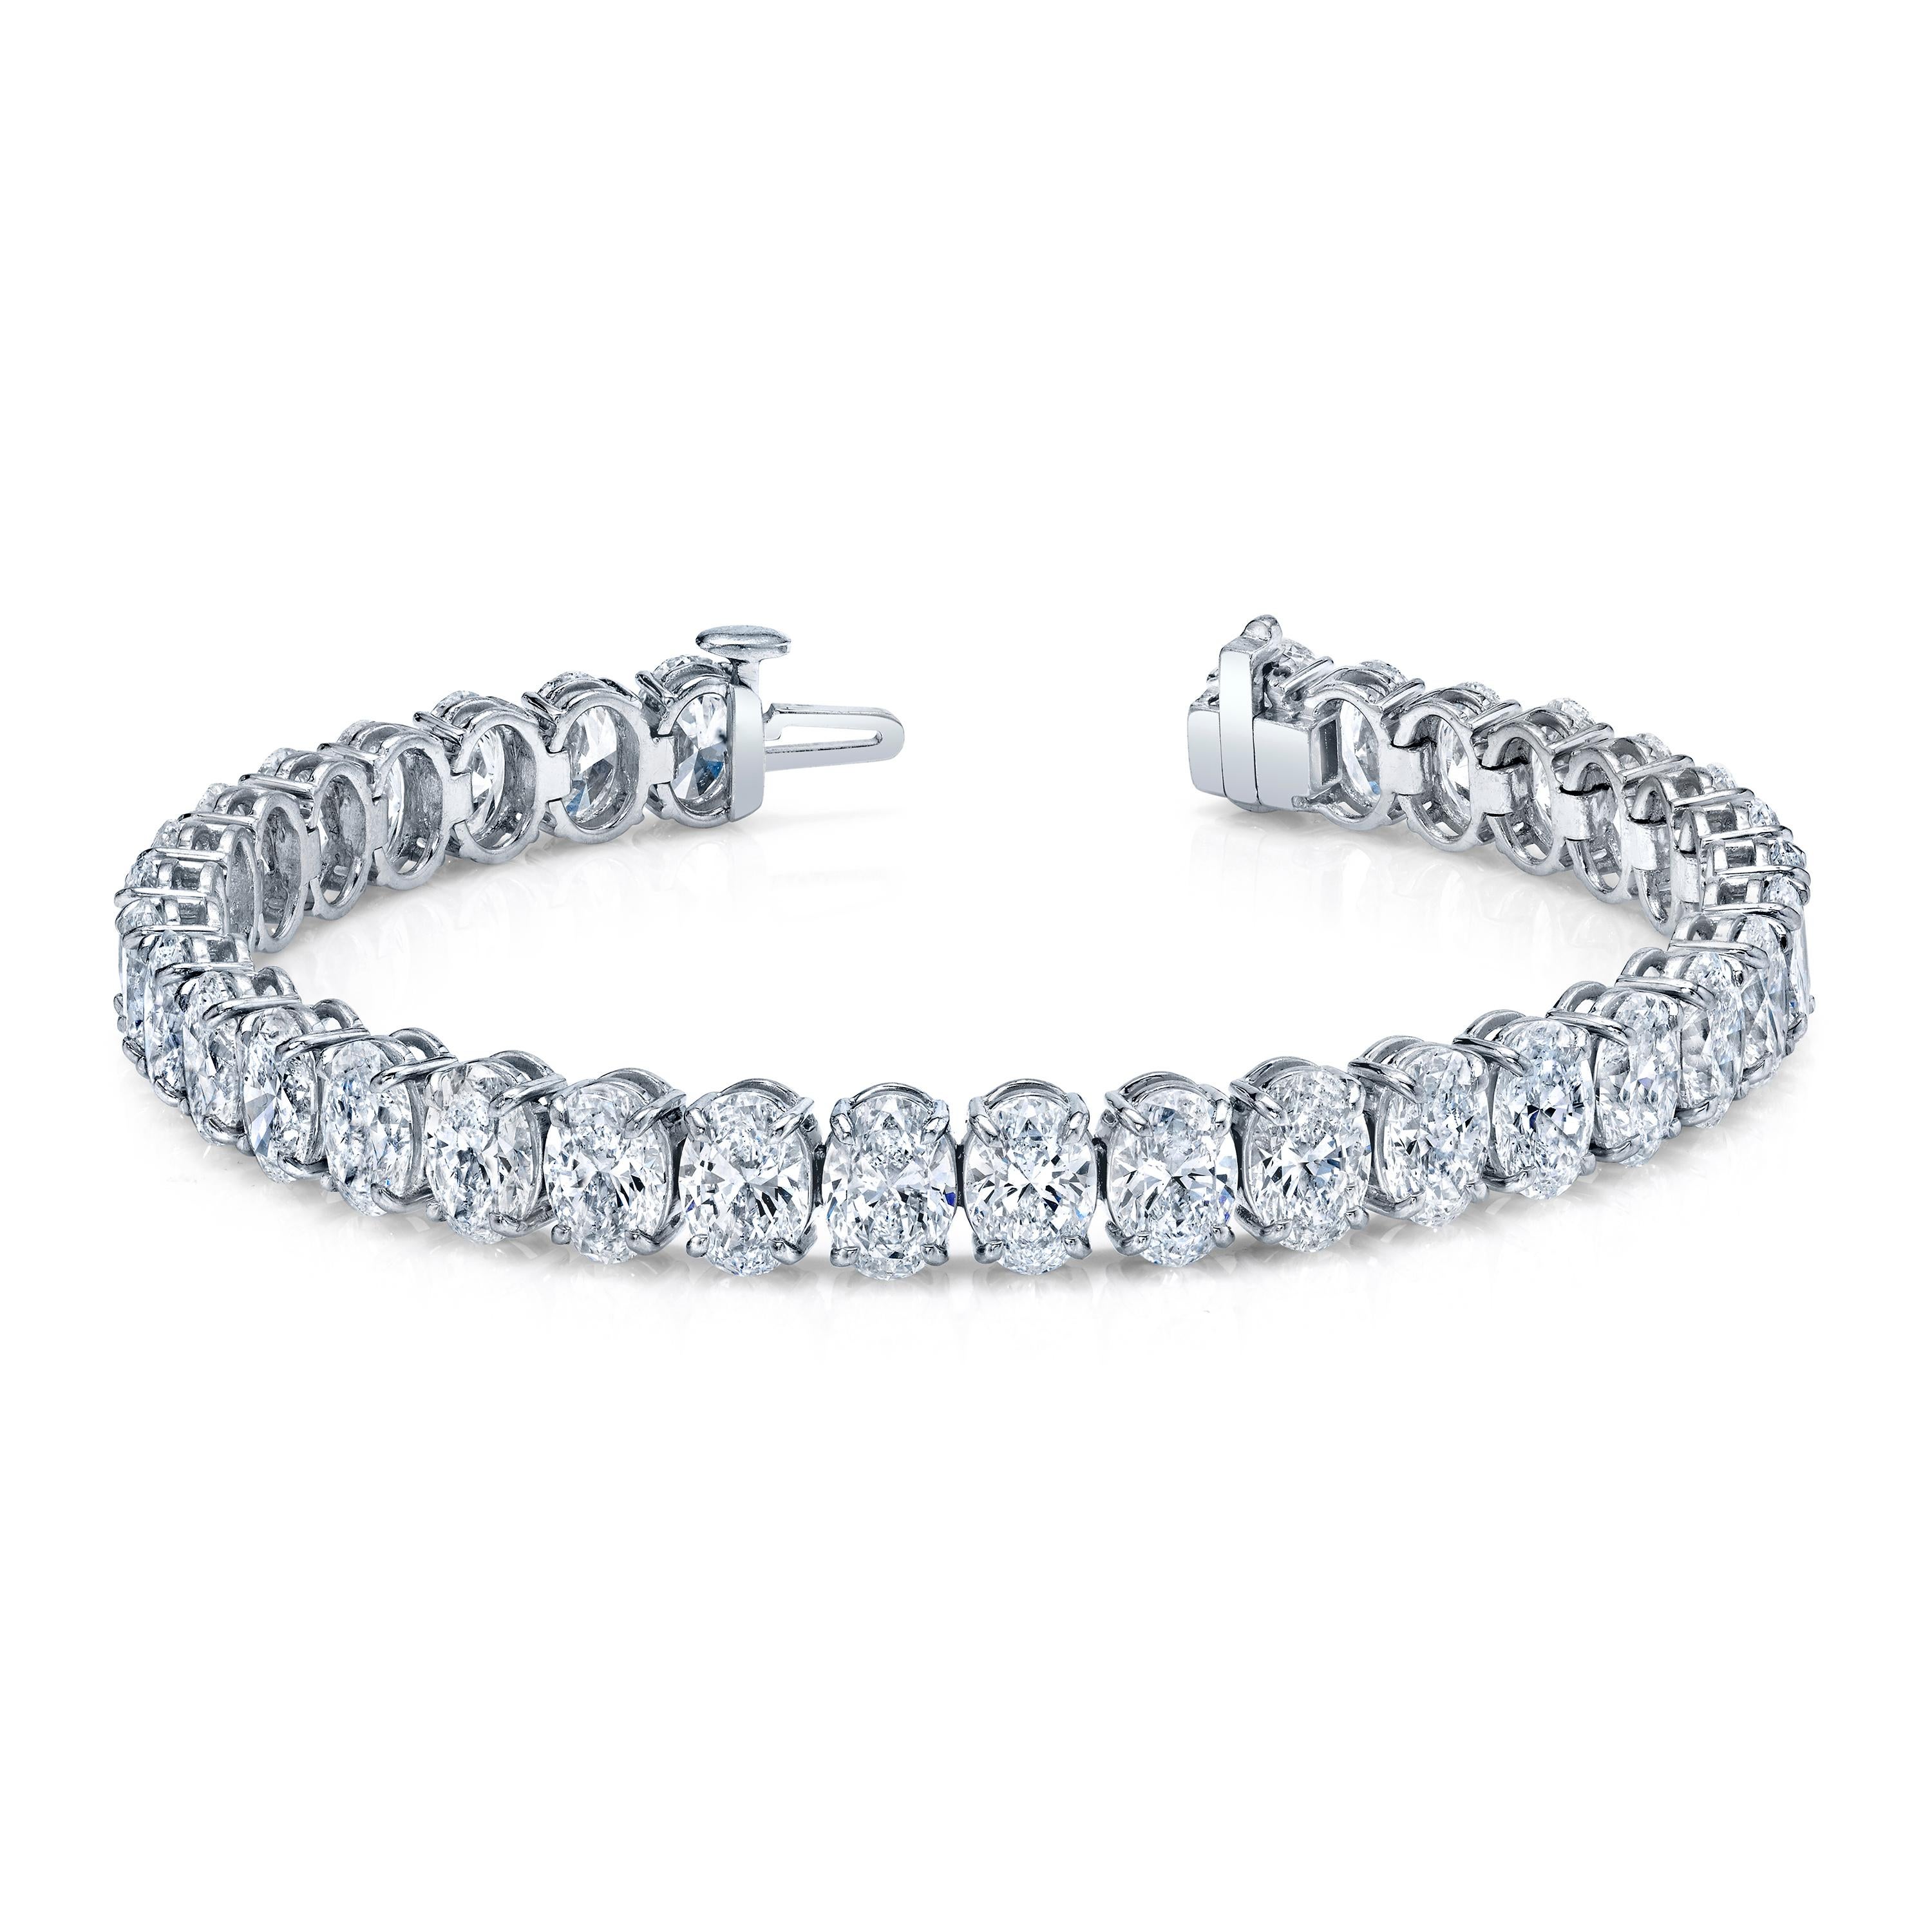 34 diamants taille ovale sertis dans un bracelet en platine à 4 griffes en ligne droite.
poids total de 24 carats
Couleurs  D - F  Clarté  IF - SI1  GIA 
Longueur 7 pouces